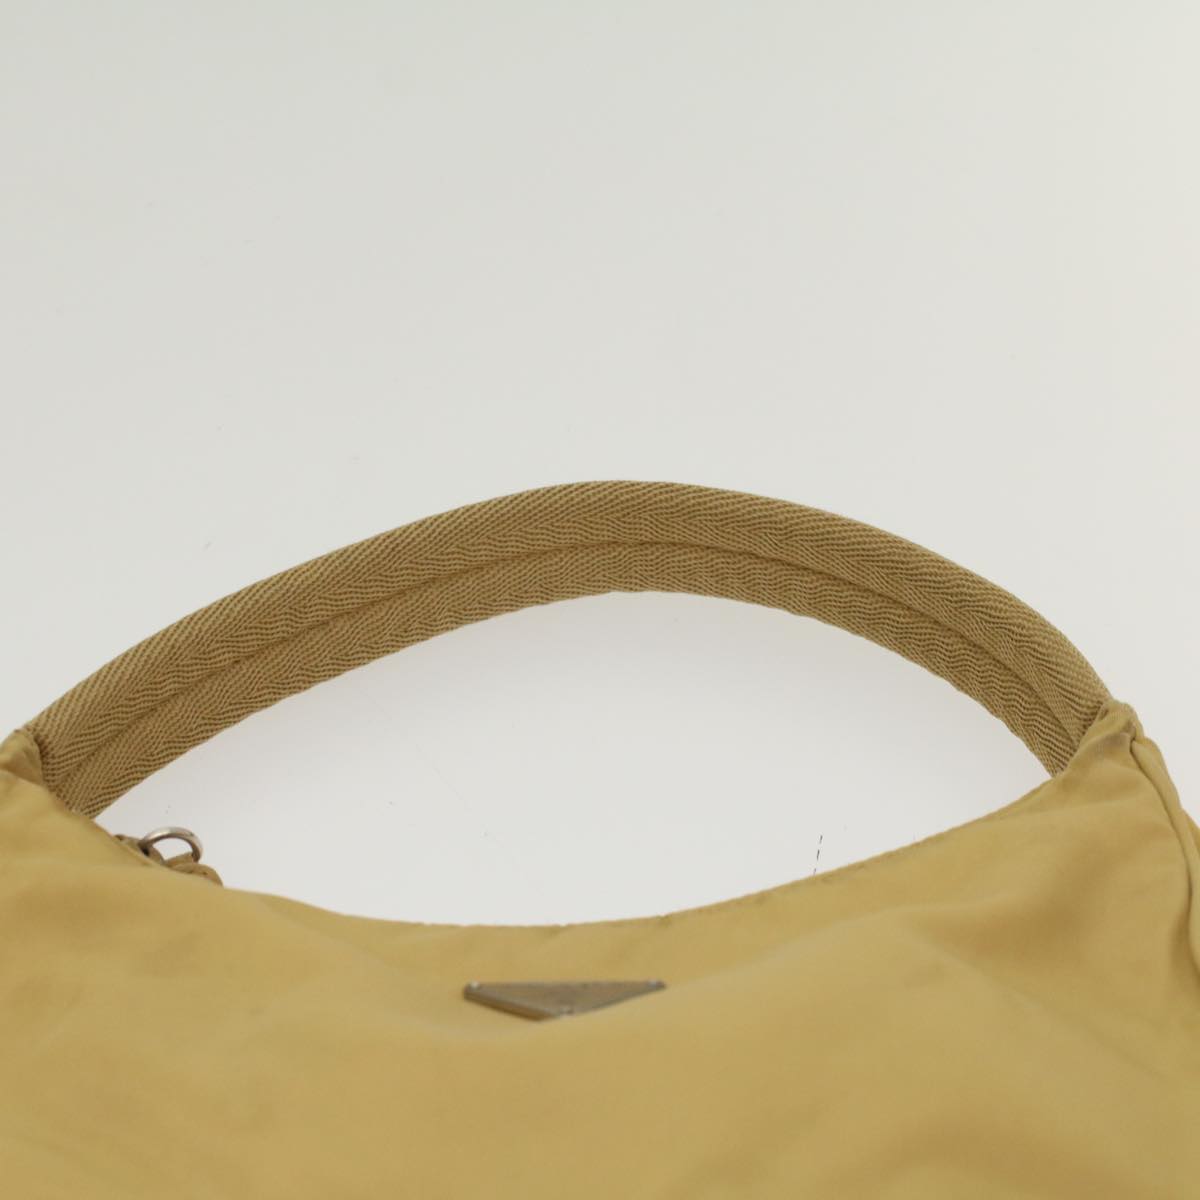 PRADA Hand Bag Nylon Yellow Auth 47650